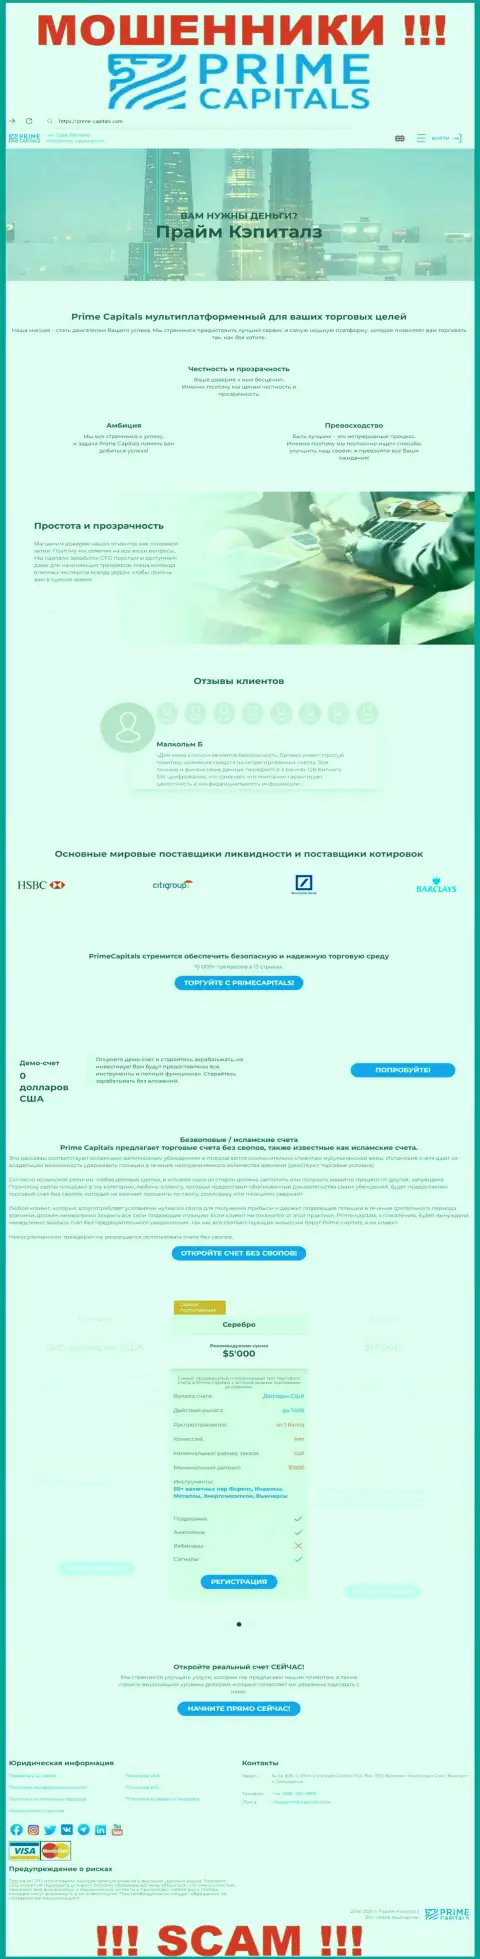 Официальный информационный портал мошенников Прайм Капиталз